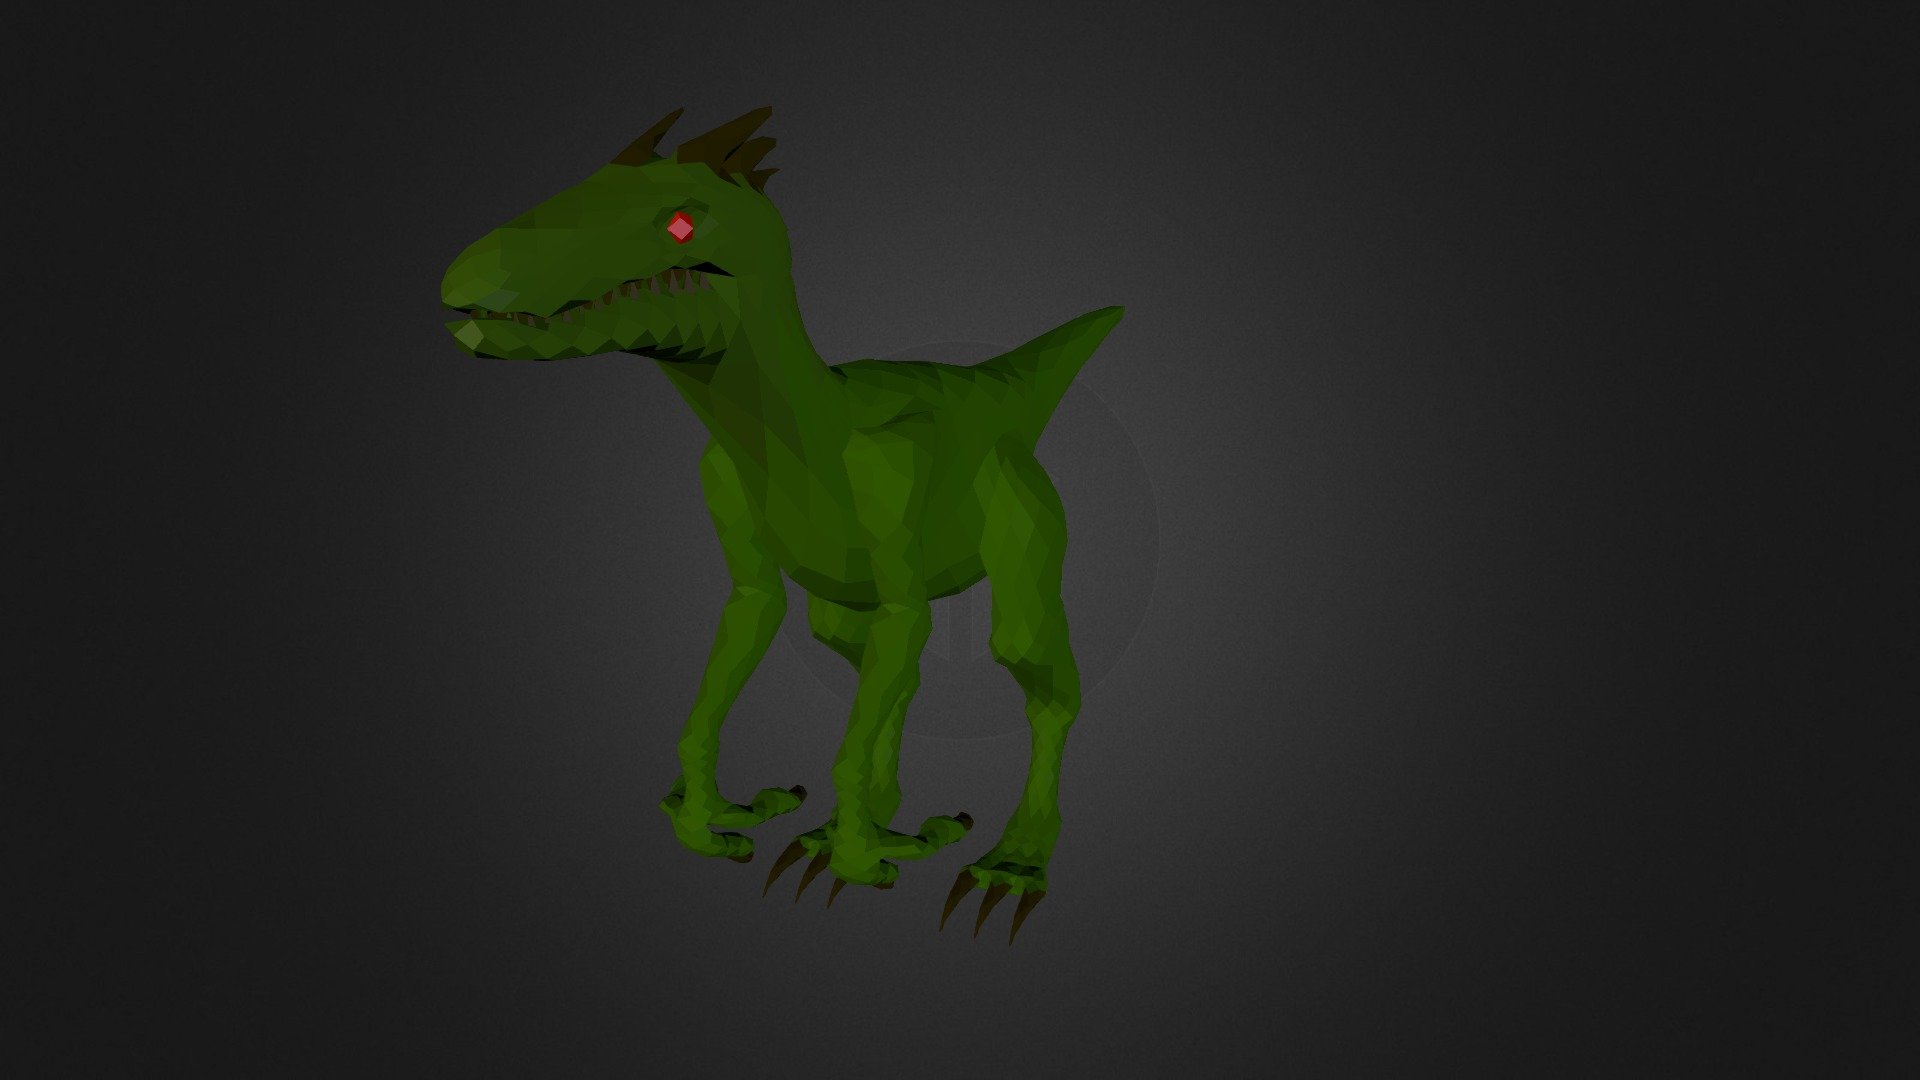 velociraptor model for games